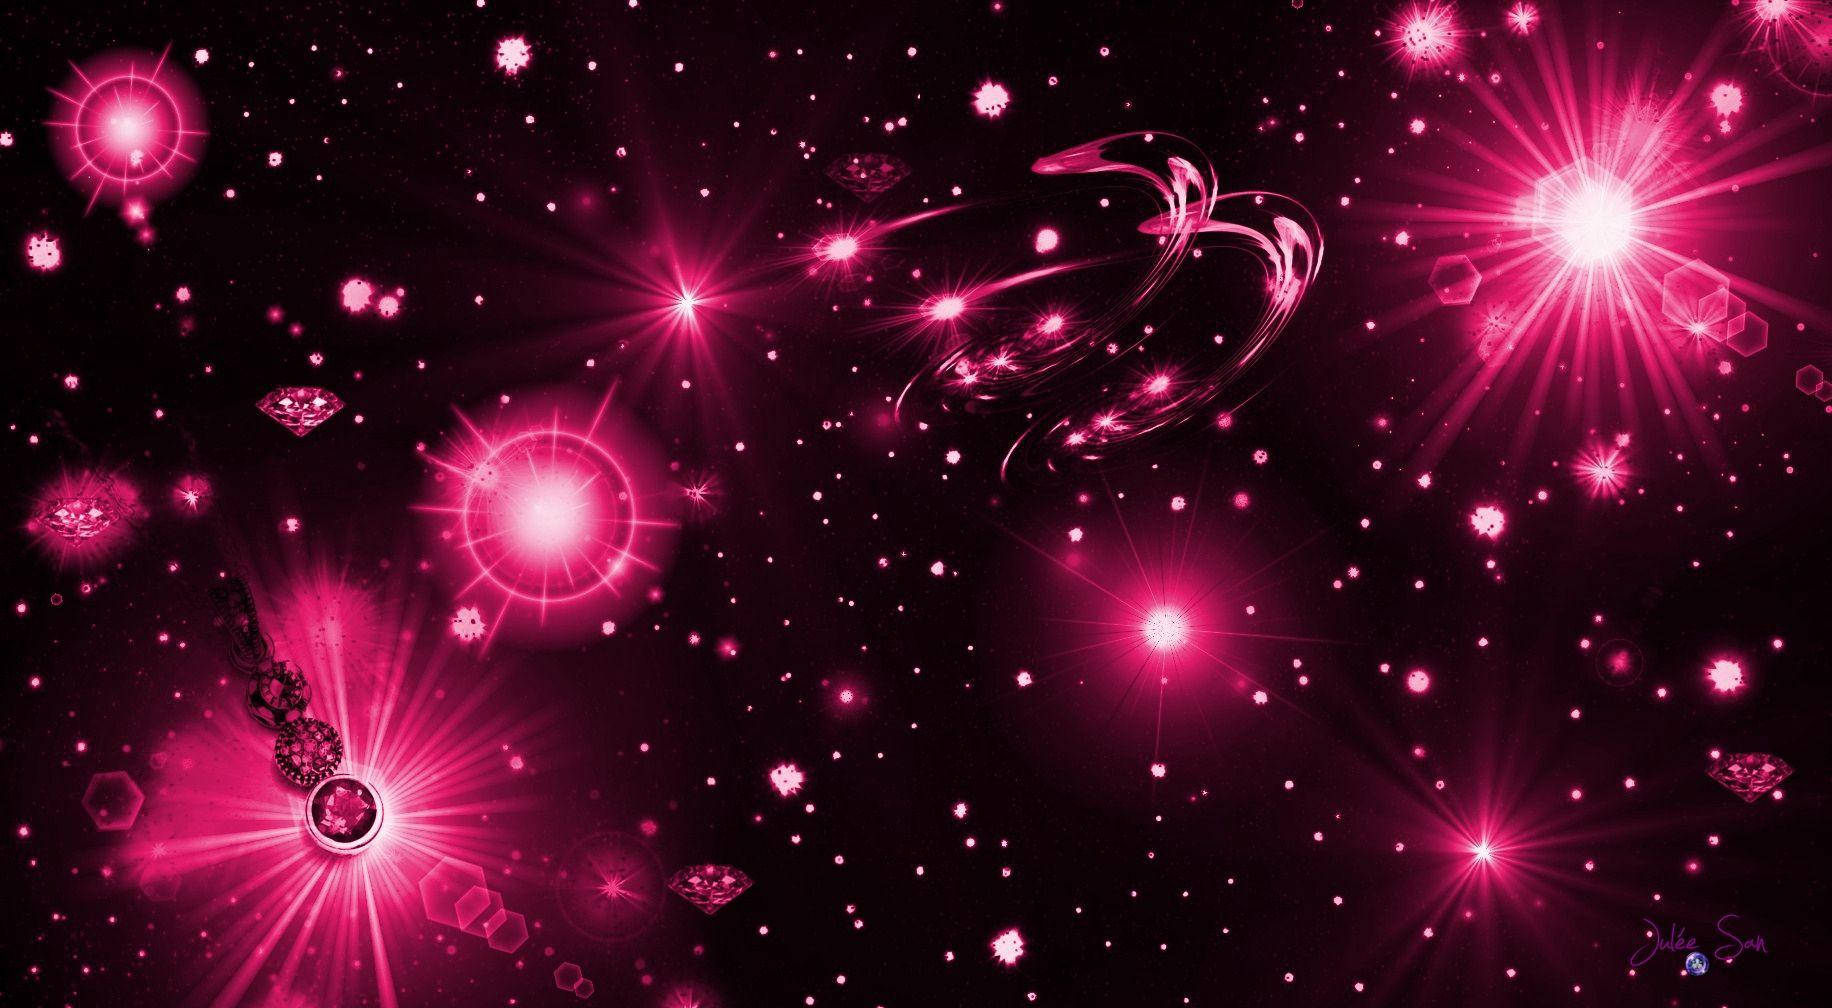 Bạn đam mê vũ trụ và màu sắc Neon? Thì hình nền Neon Pink Galaxy chắc chắn là lựa chọn tuyệt vời cho bạn. Với bầu trời đầy sao và màu sắc sặc sỡ, bức hình này sẽ đưa bạn đến một thế giới đầy sáng tạo và tràn đầy năng lượng. Hãy tải ngay để trang trí màn hình của bạn!